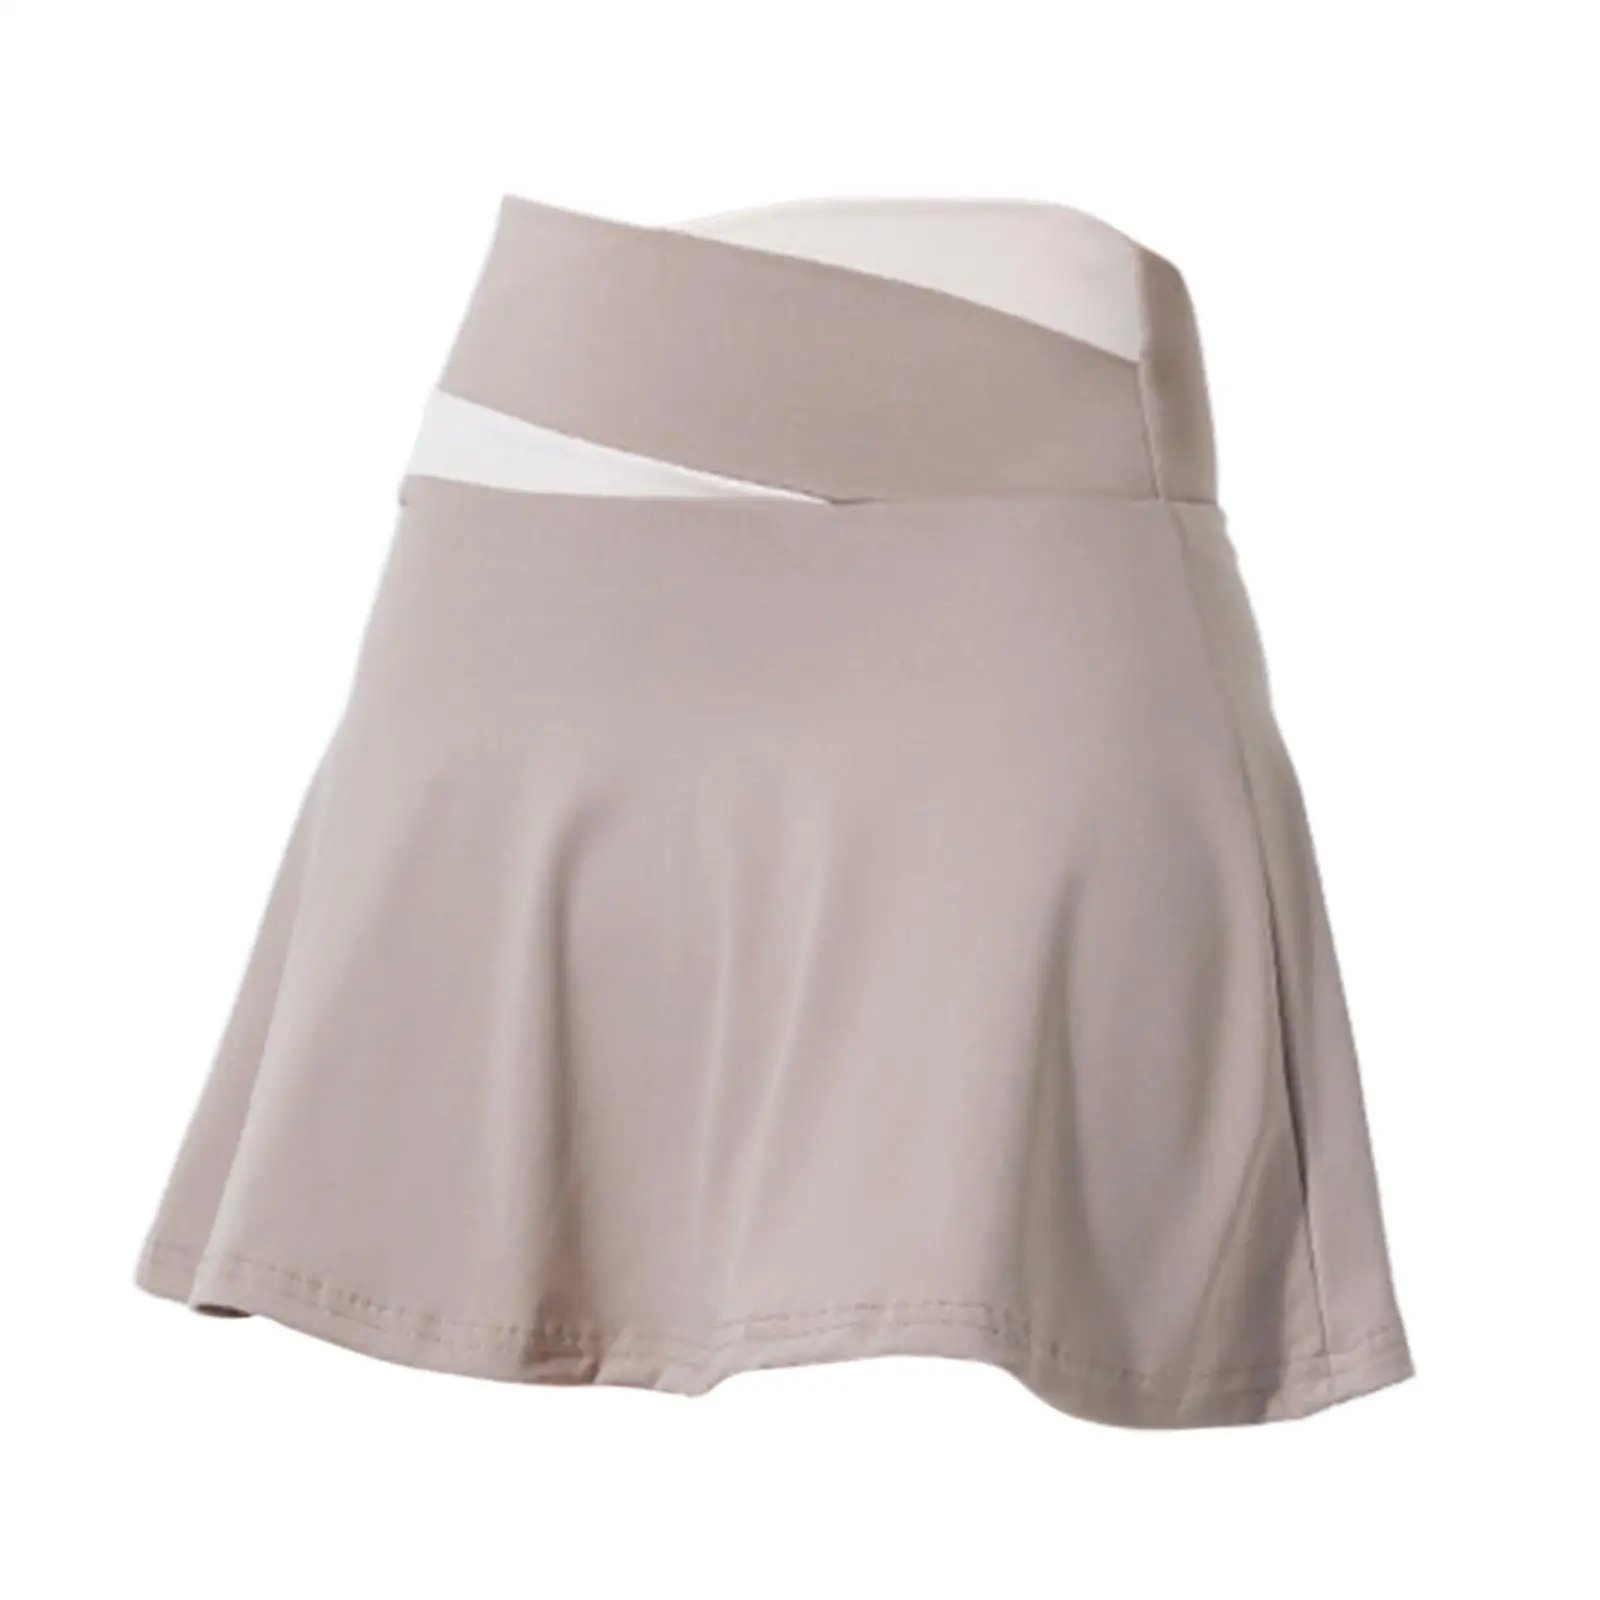 Tennis Skirt Short Skirt Anti Exposure Soft Lightweight High Waisted Cute Womens Skirt for Summer Beach Exercise Gym Sport